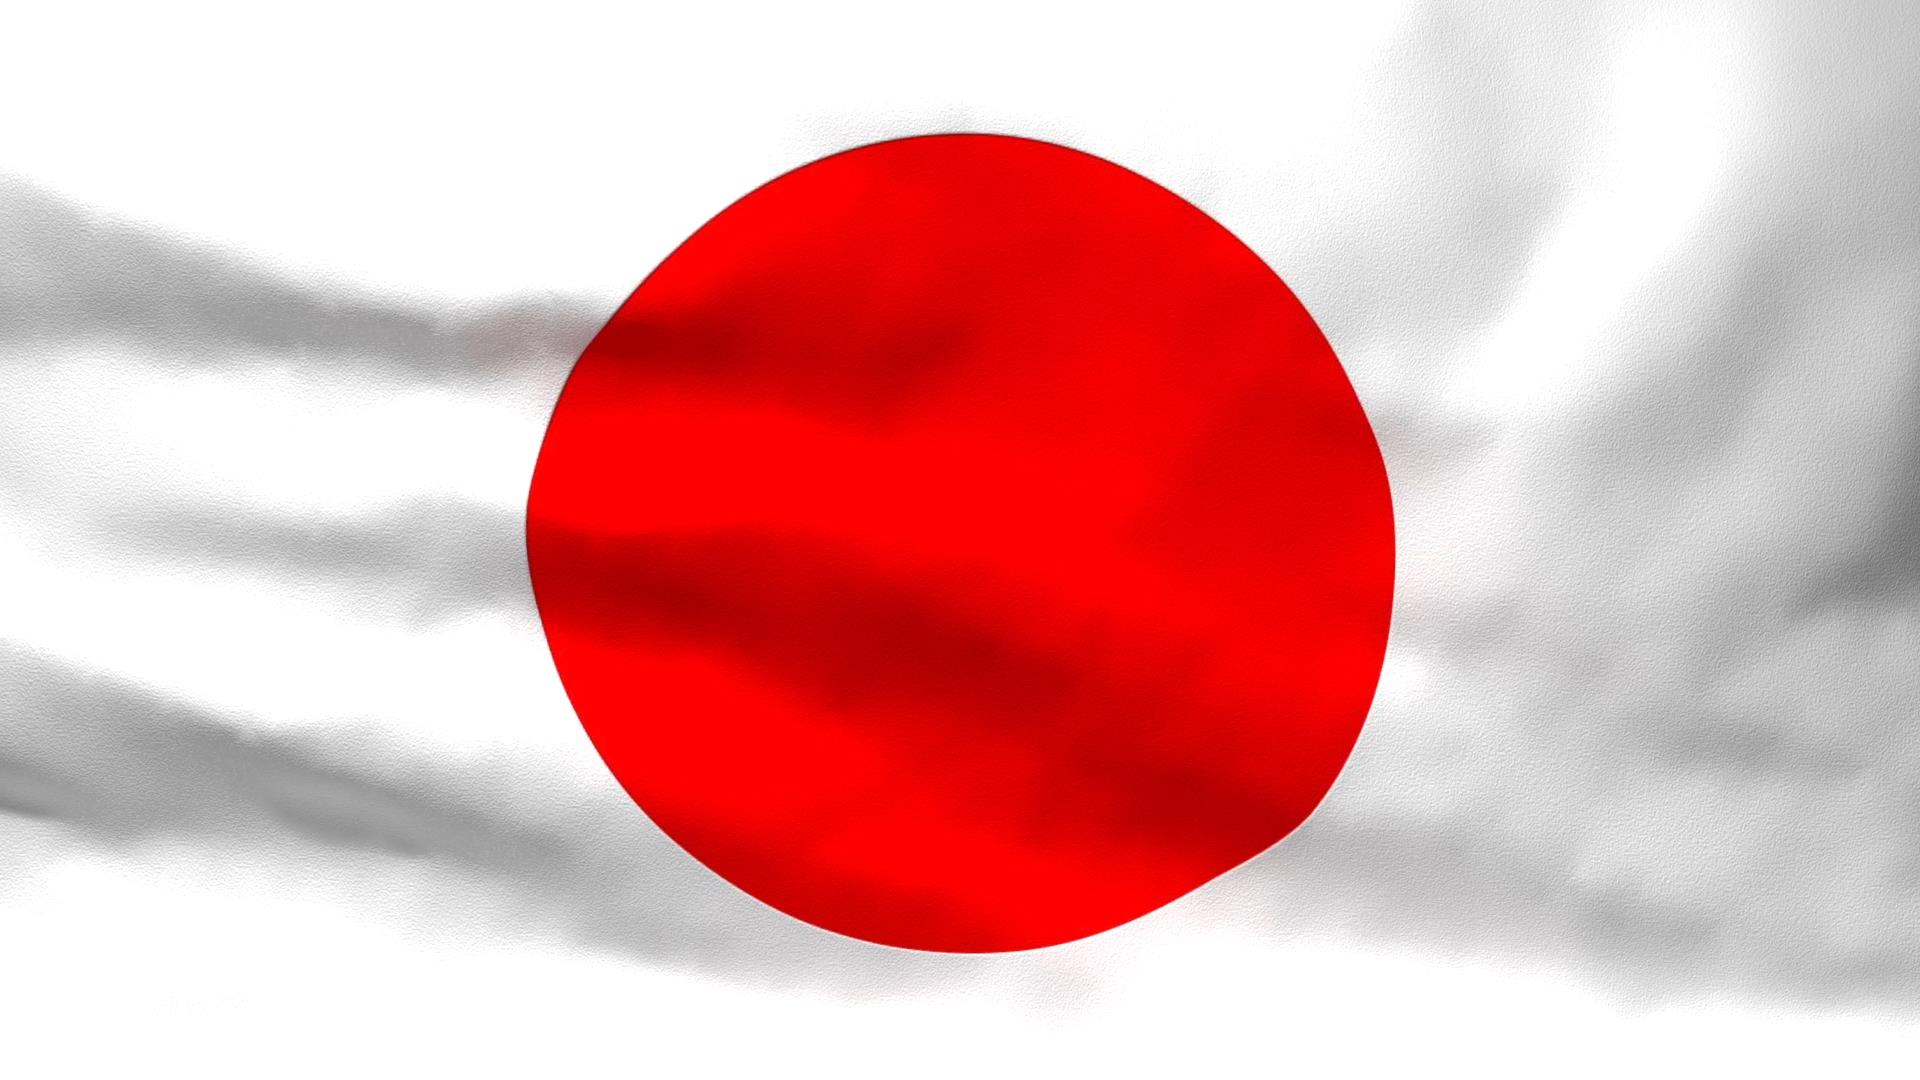 Quốc kỳ Nhật Bản:
Bạn có biết rằng quốc kỳ Nhật Bản là biểu tượng đại diện cho quốc gia giàu truyền thống và văn hóa đa dạng? Với màu đỏ truyền thống và các đường nét đơn giản nhưng tinh tế, quốc kỳ này đã là niềm tự hào của người Nhật trong nhiều thế kỷ. Hãy cùng xem hình minh họa để thấu hiểu rõ hơn về ý nghĩa của quốc kỳ Nhật Bản.